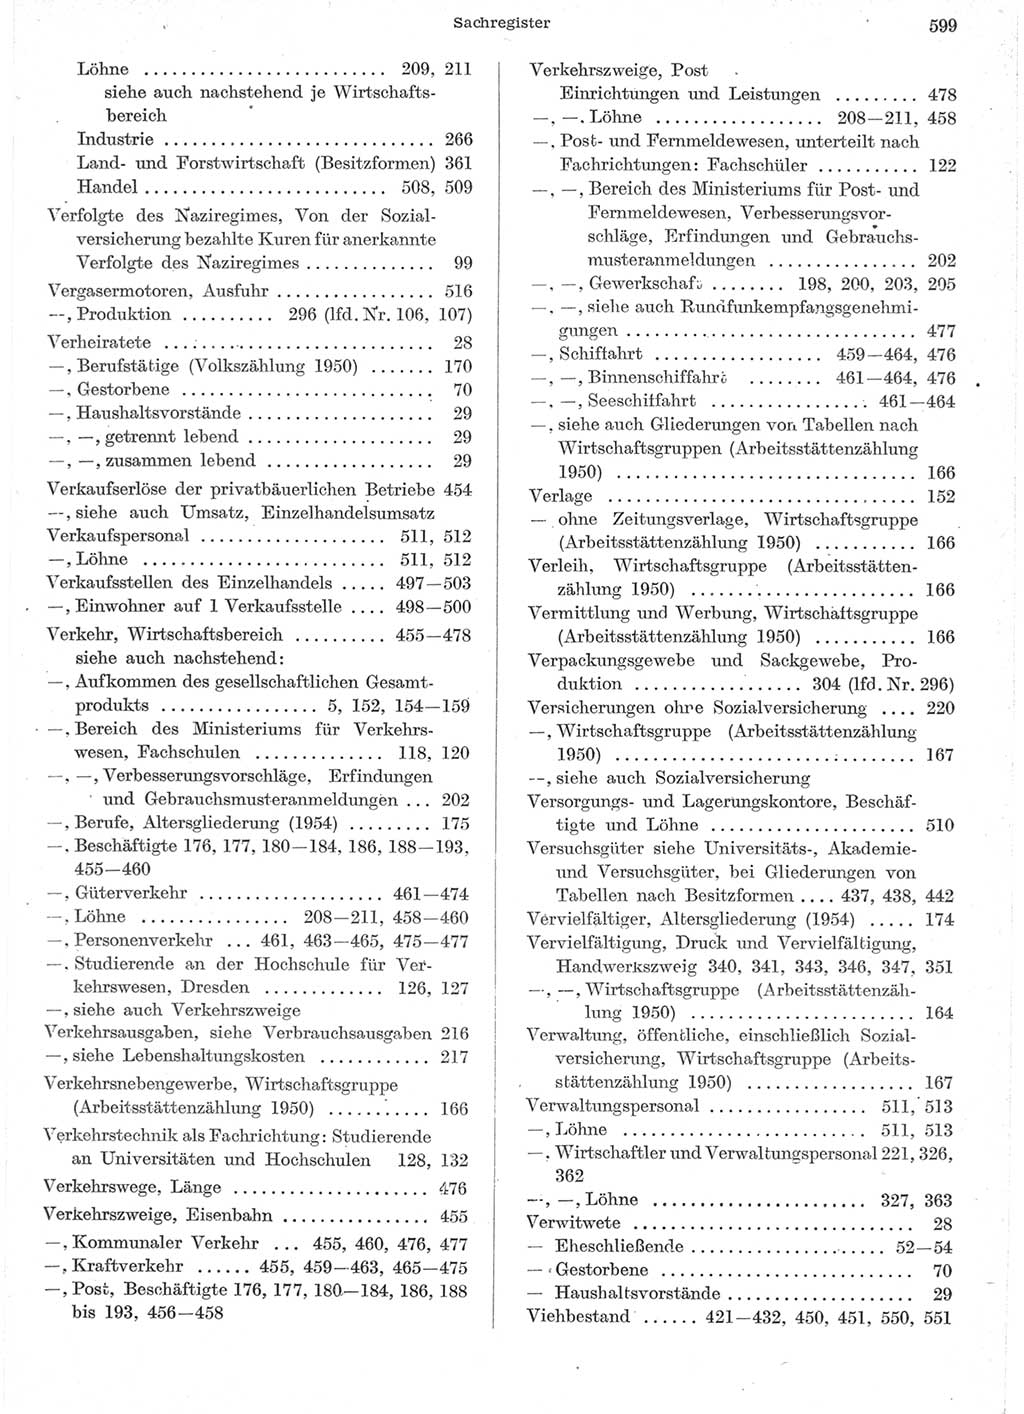 Statistisches Jahrbuch der Deutschen Demokratischen Republik (DDR) 1957, Seite 599 (Stat. Jb. DDR 1957, S. 599)